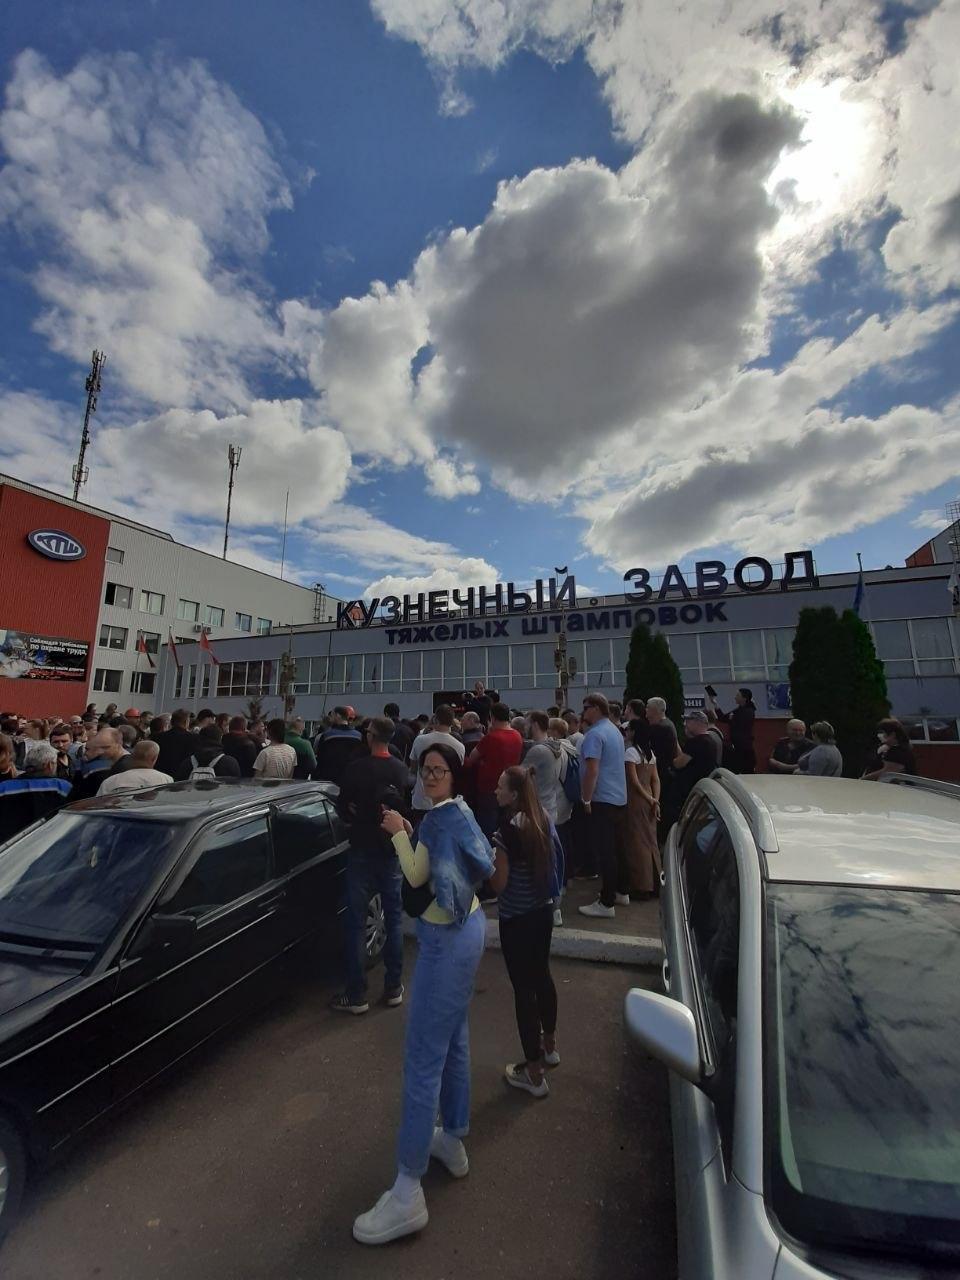 Кузнечный завод тяжелых штамповок в Жодино протестует против Лукашенко